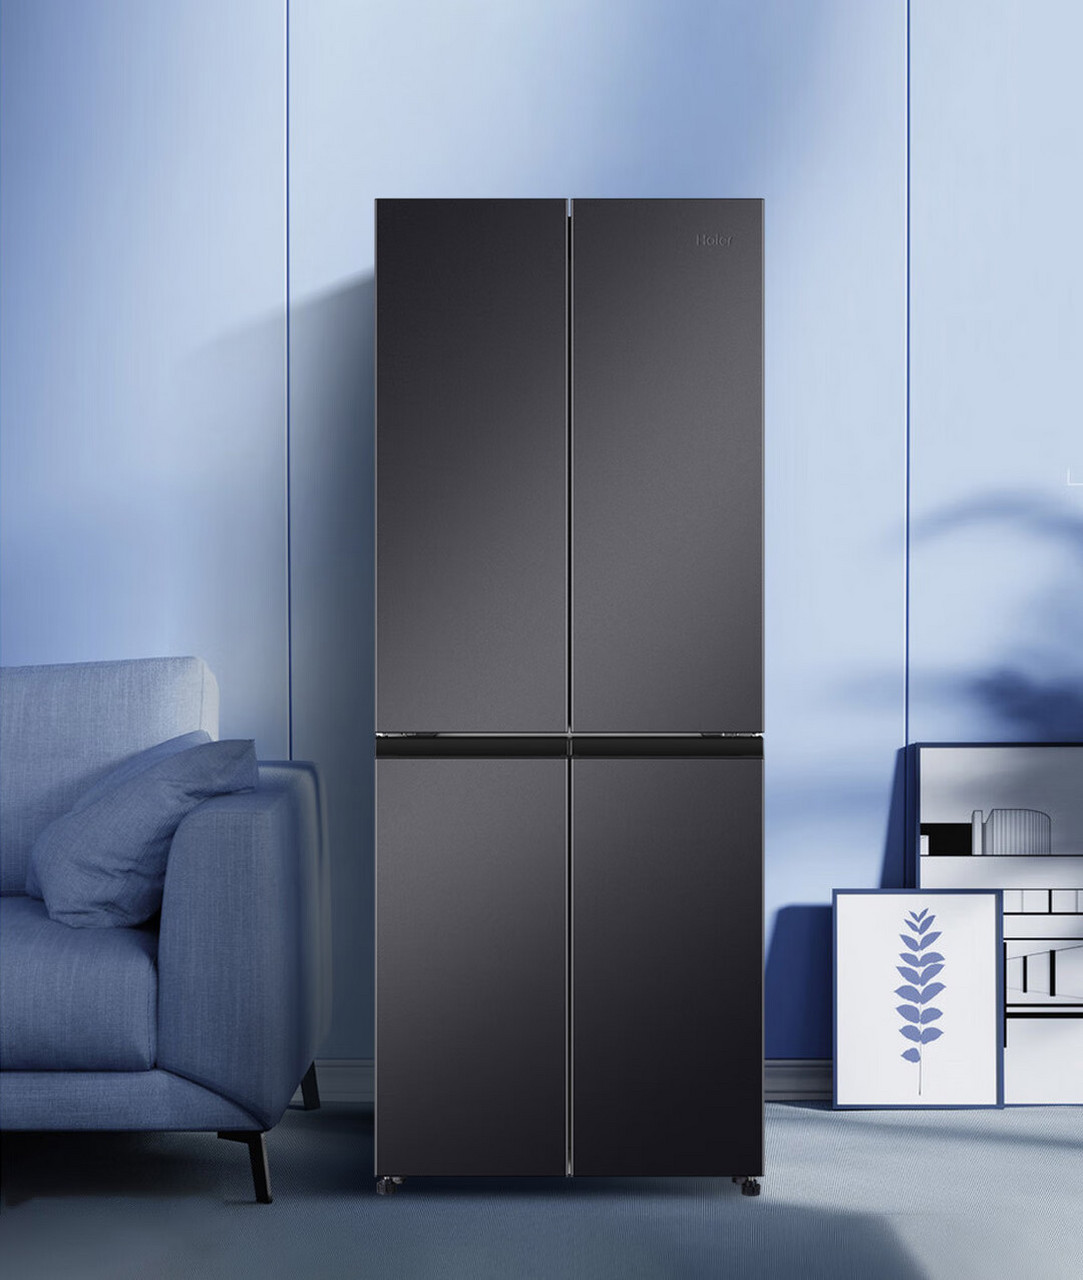 你是否在寻找一款兼具专业性与时尚感的家用电冰箱?